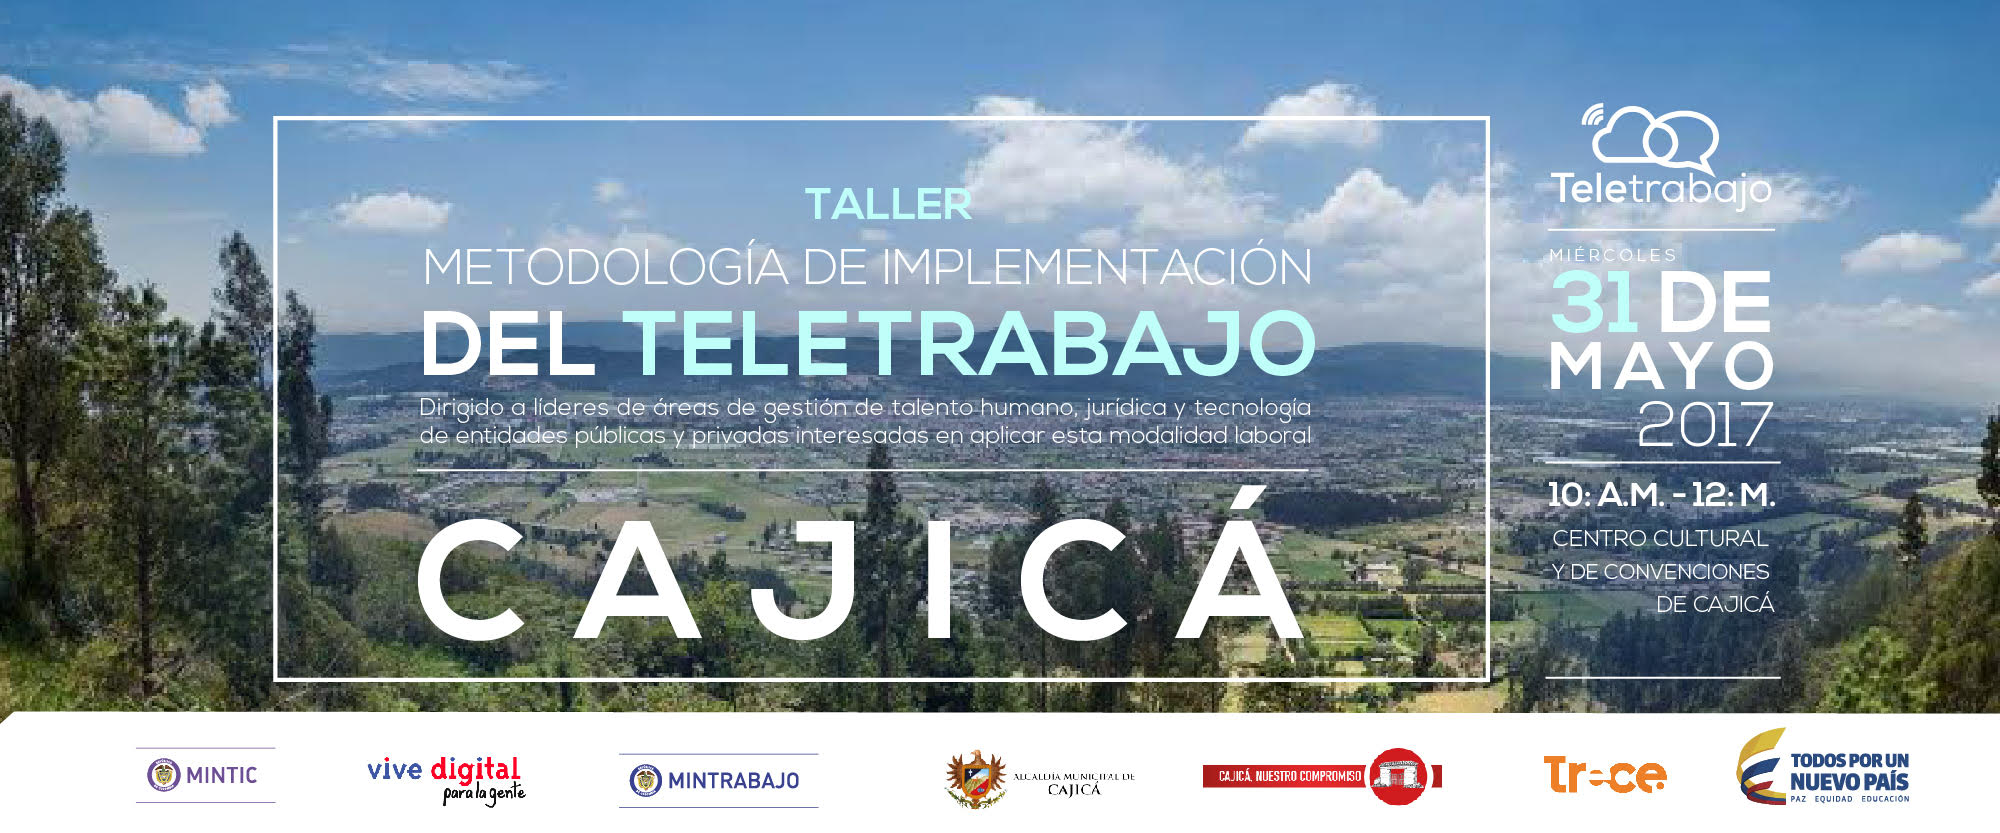 Taller de Teletrabajo llega a Cajicá